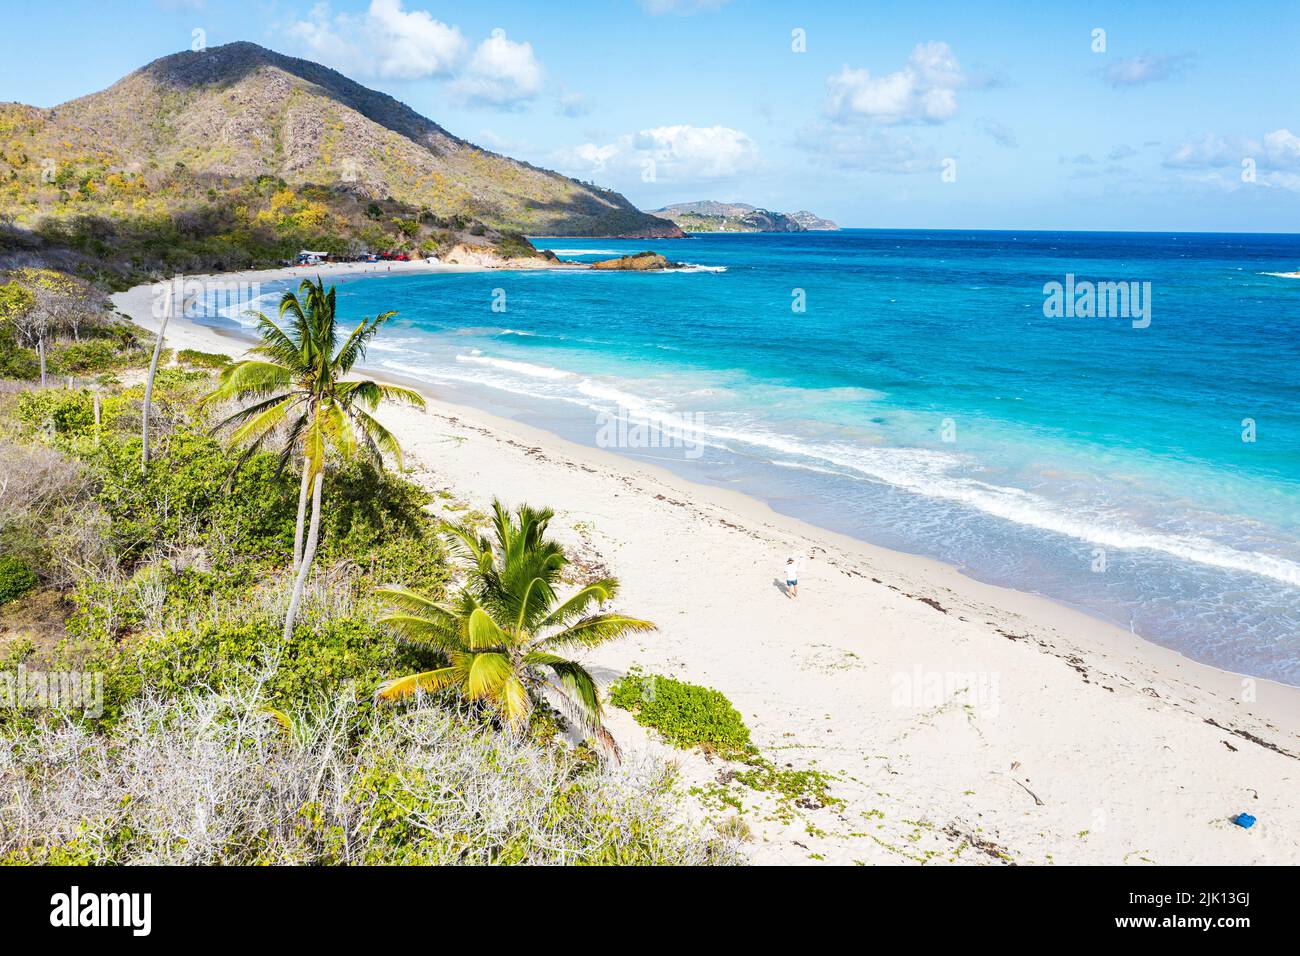 Une promenade touristique sur la plage vide bordée de palmiers, vue en hauteur, Rendezvous Beach, Antigua, West Indies, Caraïbes, Amérique centrale Banque D'Images